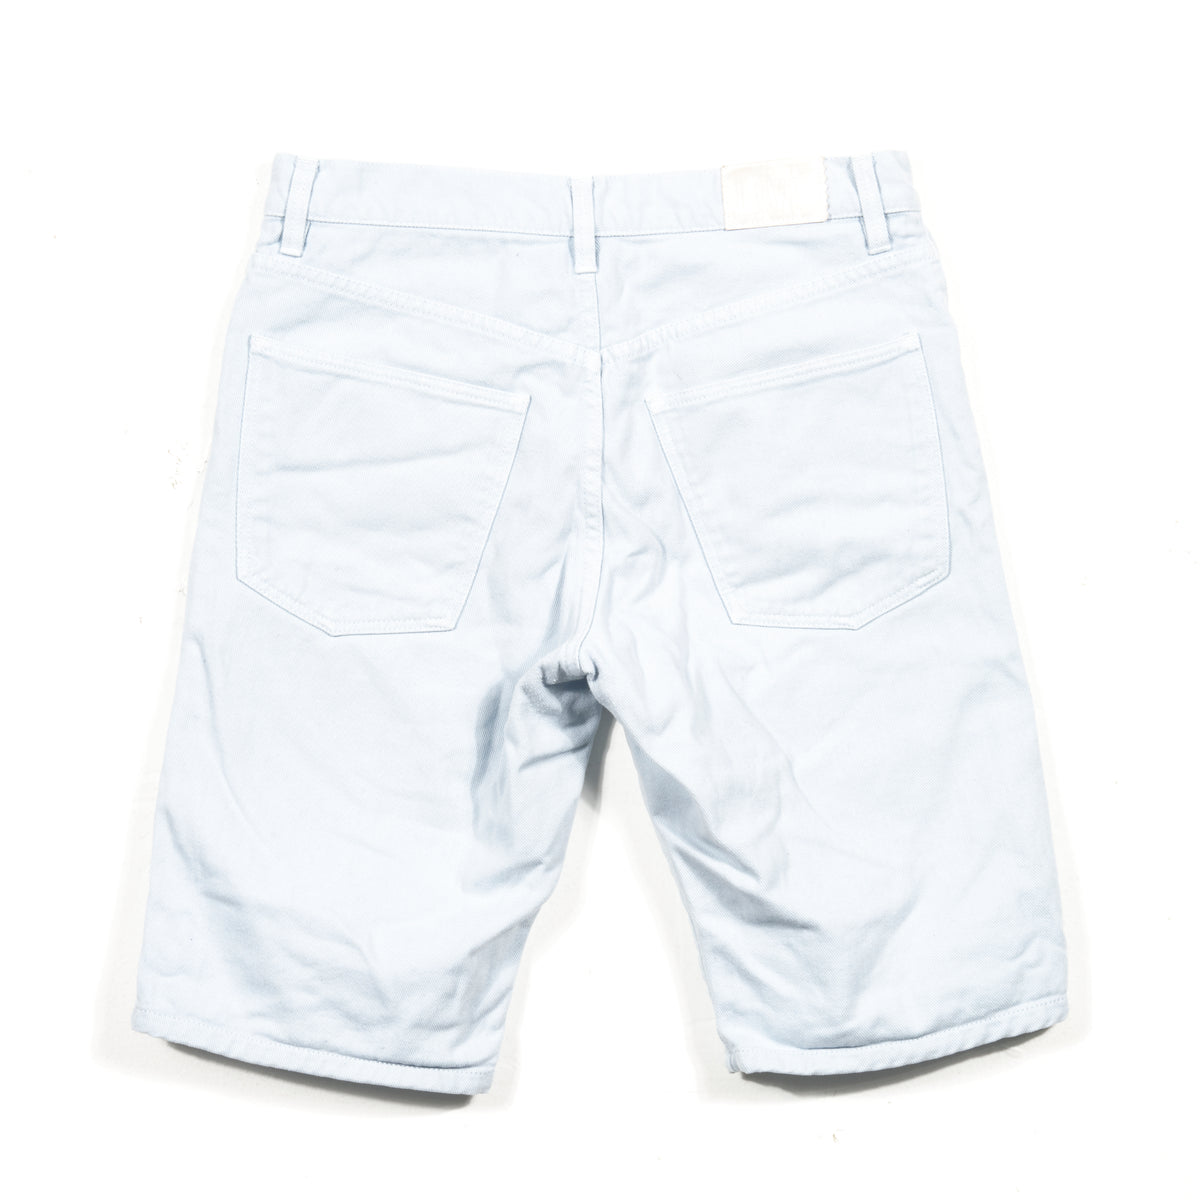 Lacoste Blue Jeans Shorts Sz 30 – Pete & Harry